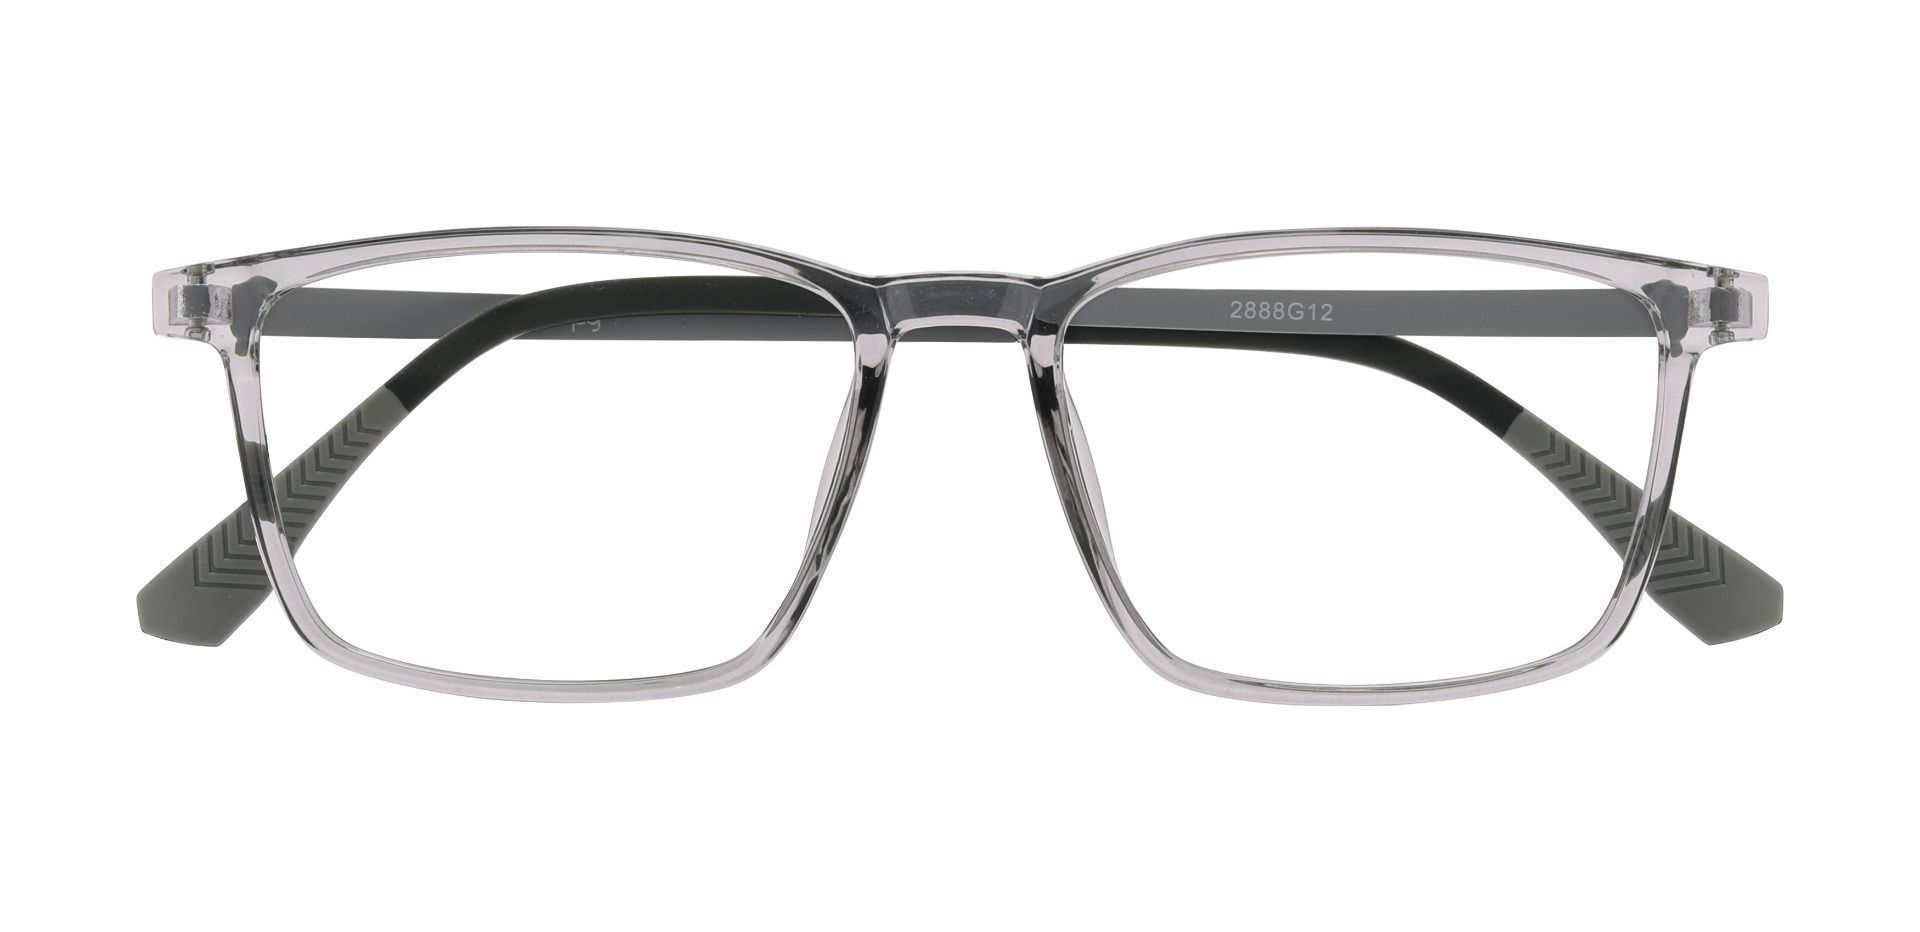 Althea Rectangle Prescription Glasses - Gray